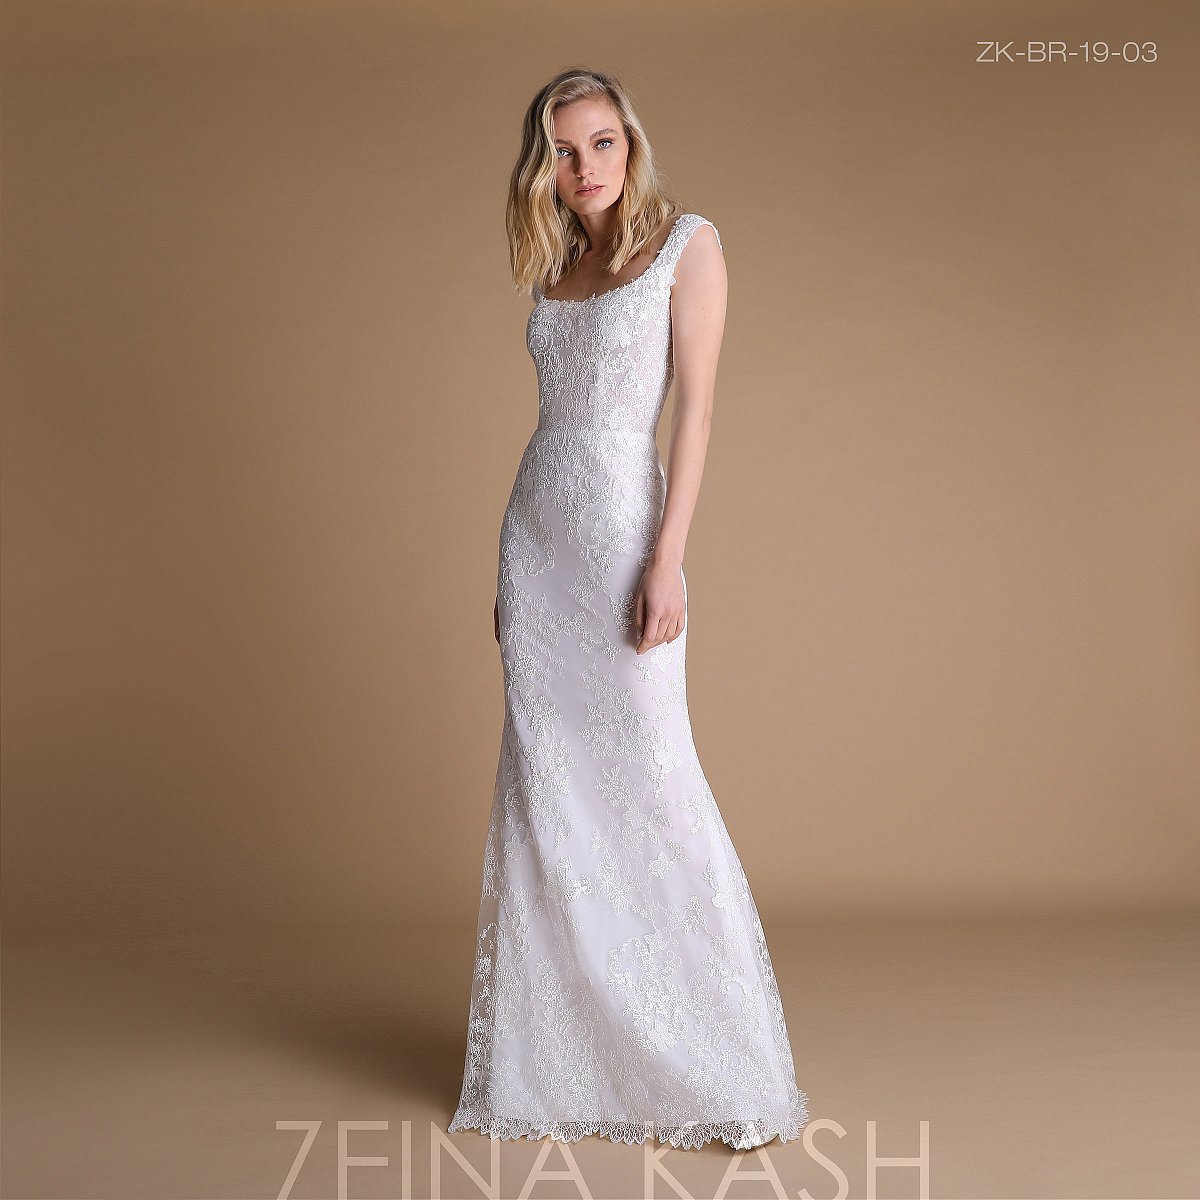 Zeina Kash samling 2019 - Bröllopsklänningar - 1